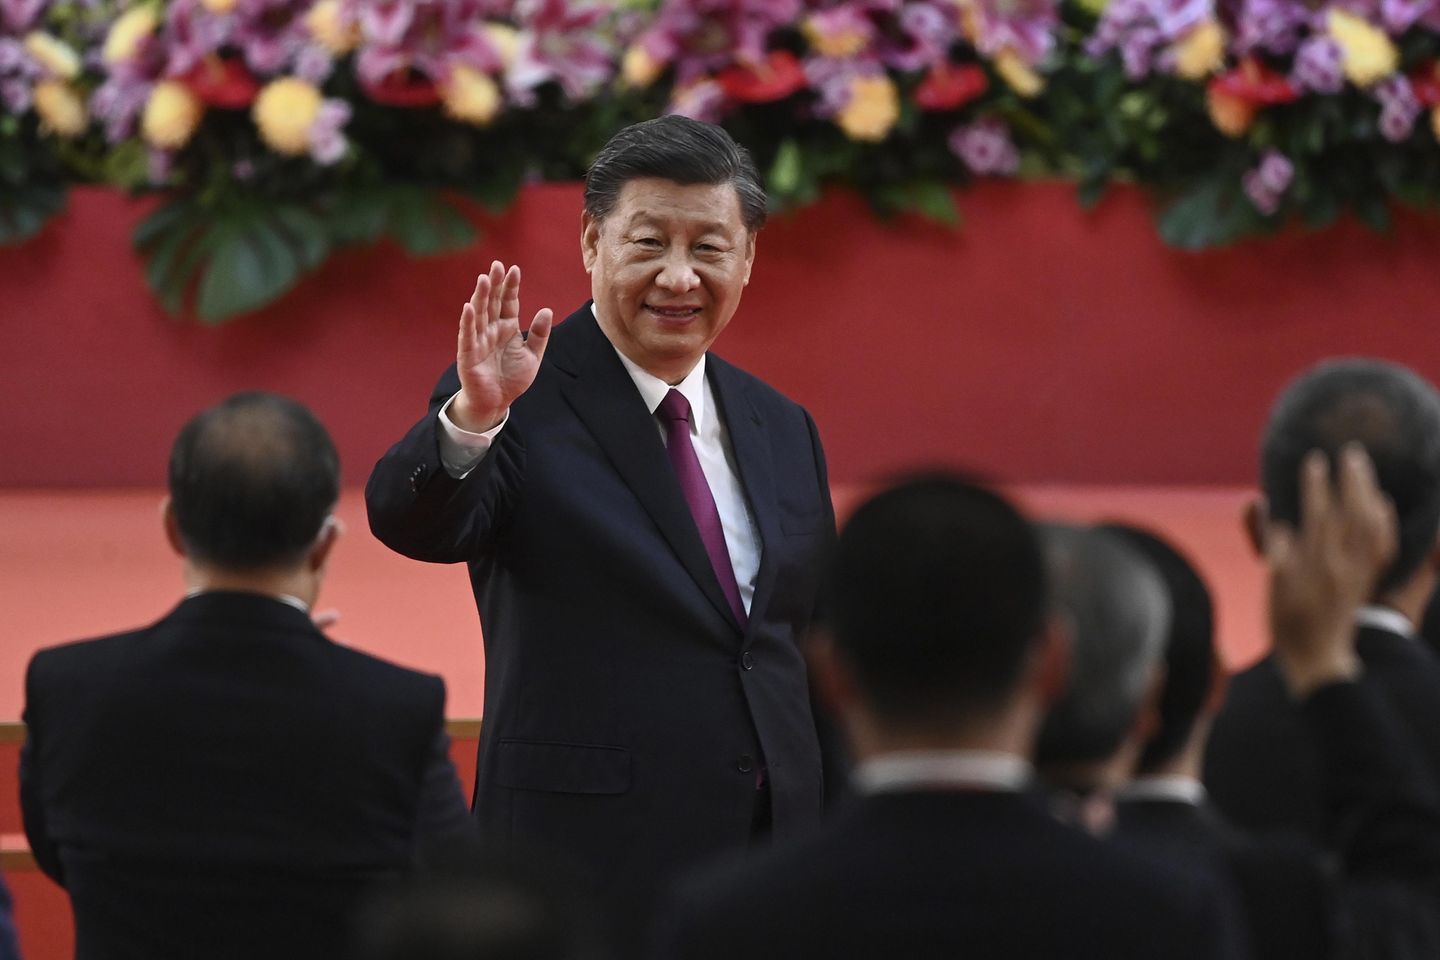 Çin Devlet Başkanı Xi Jinping, Joe Biden'a COVID-19'dan hızlı bir şekilde iyileşmesini diler